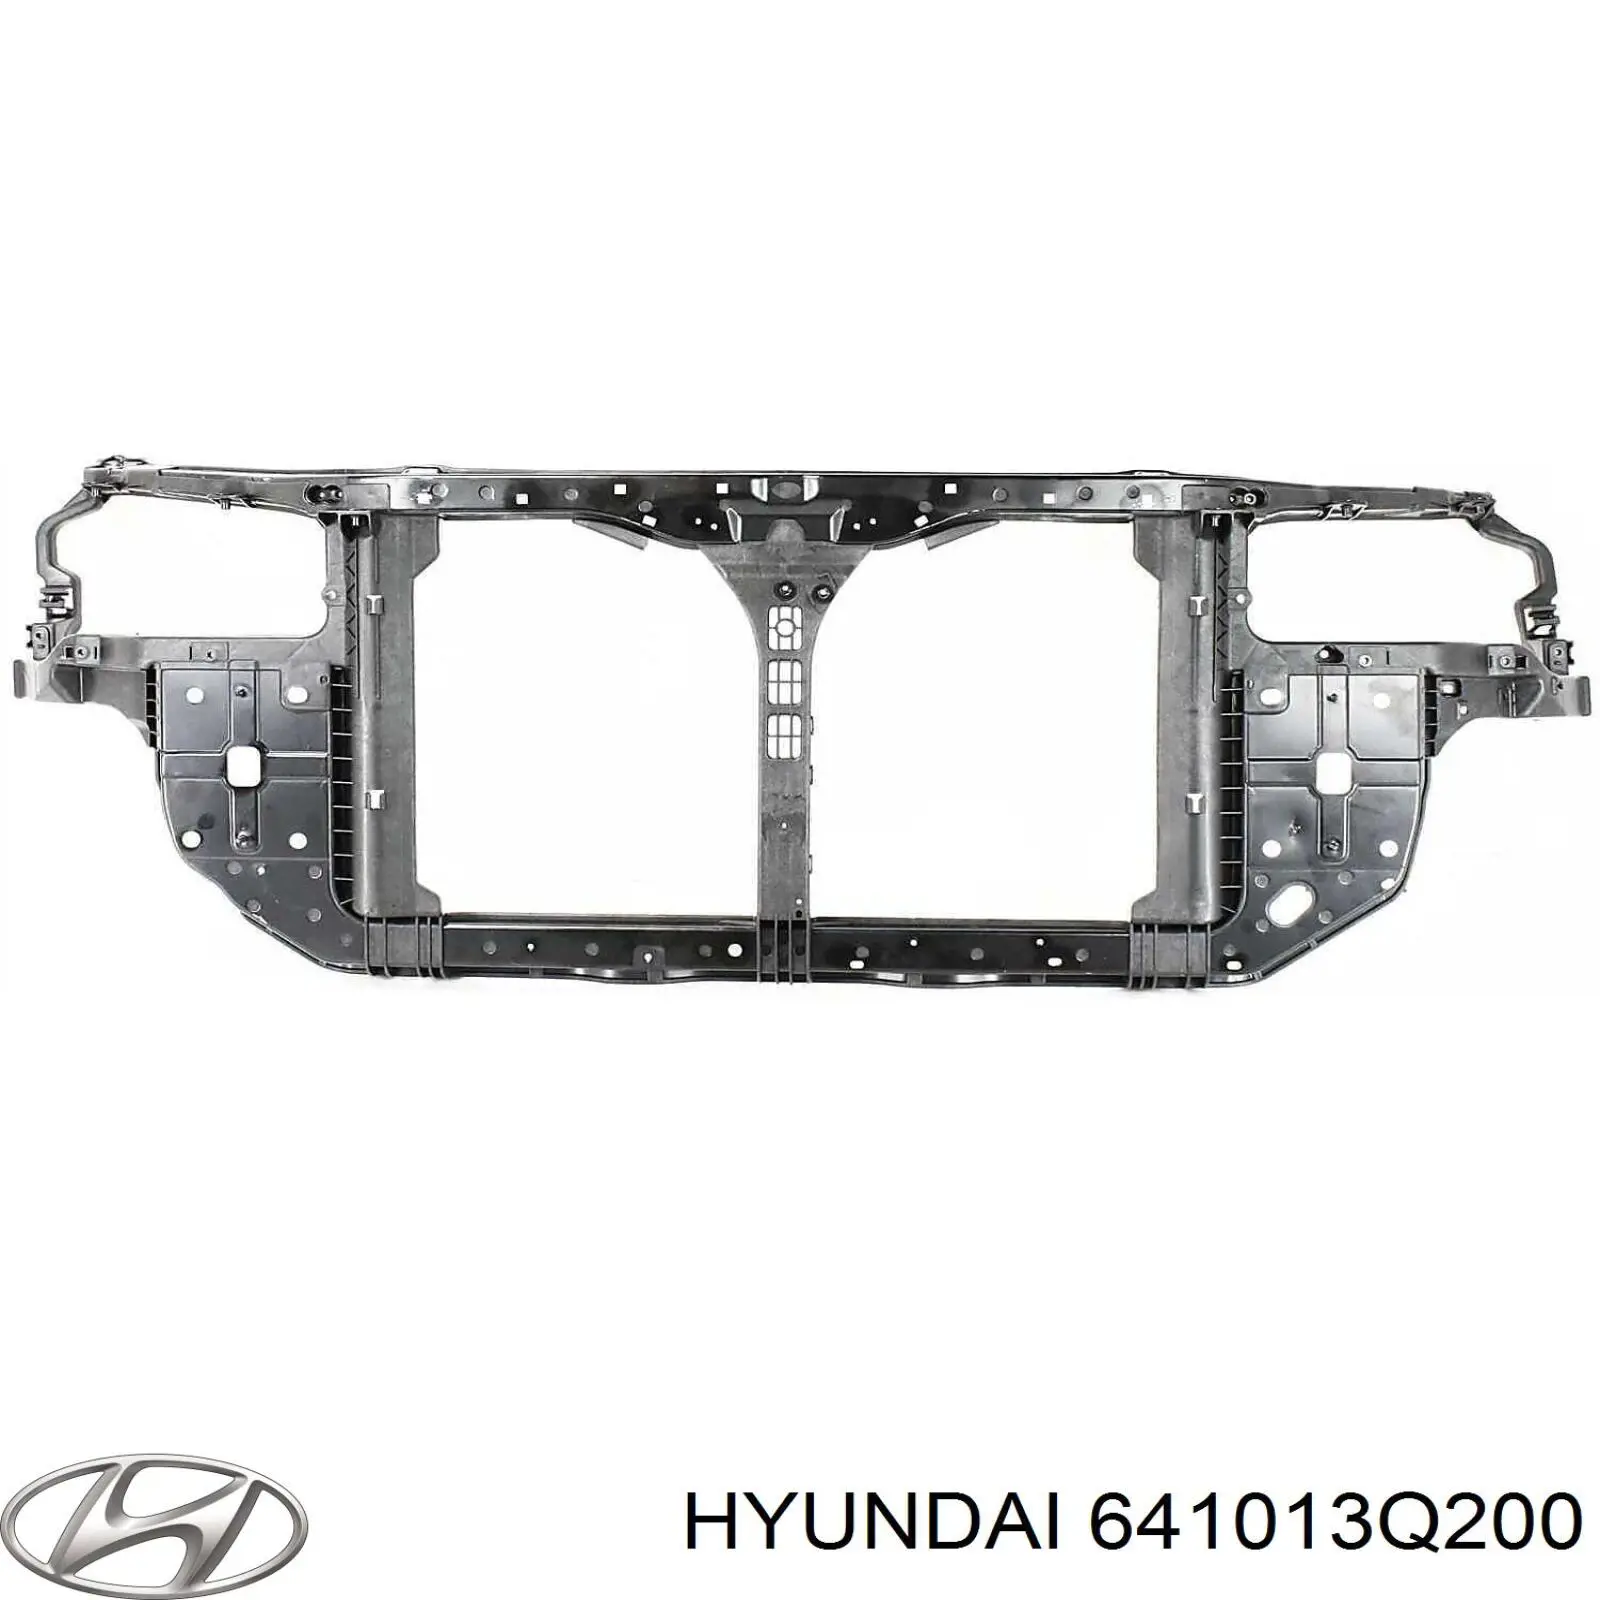 Суппорт радиатора в сборе (монтажная панель крепления фар) на Hyundai Sonata YF